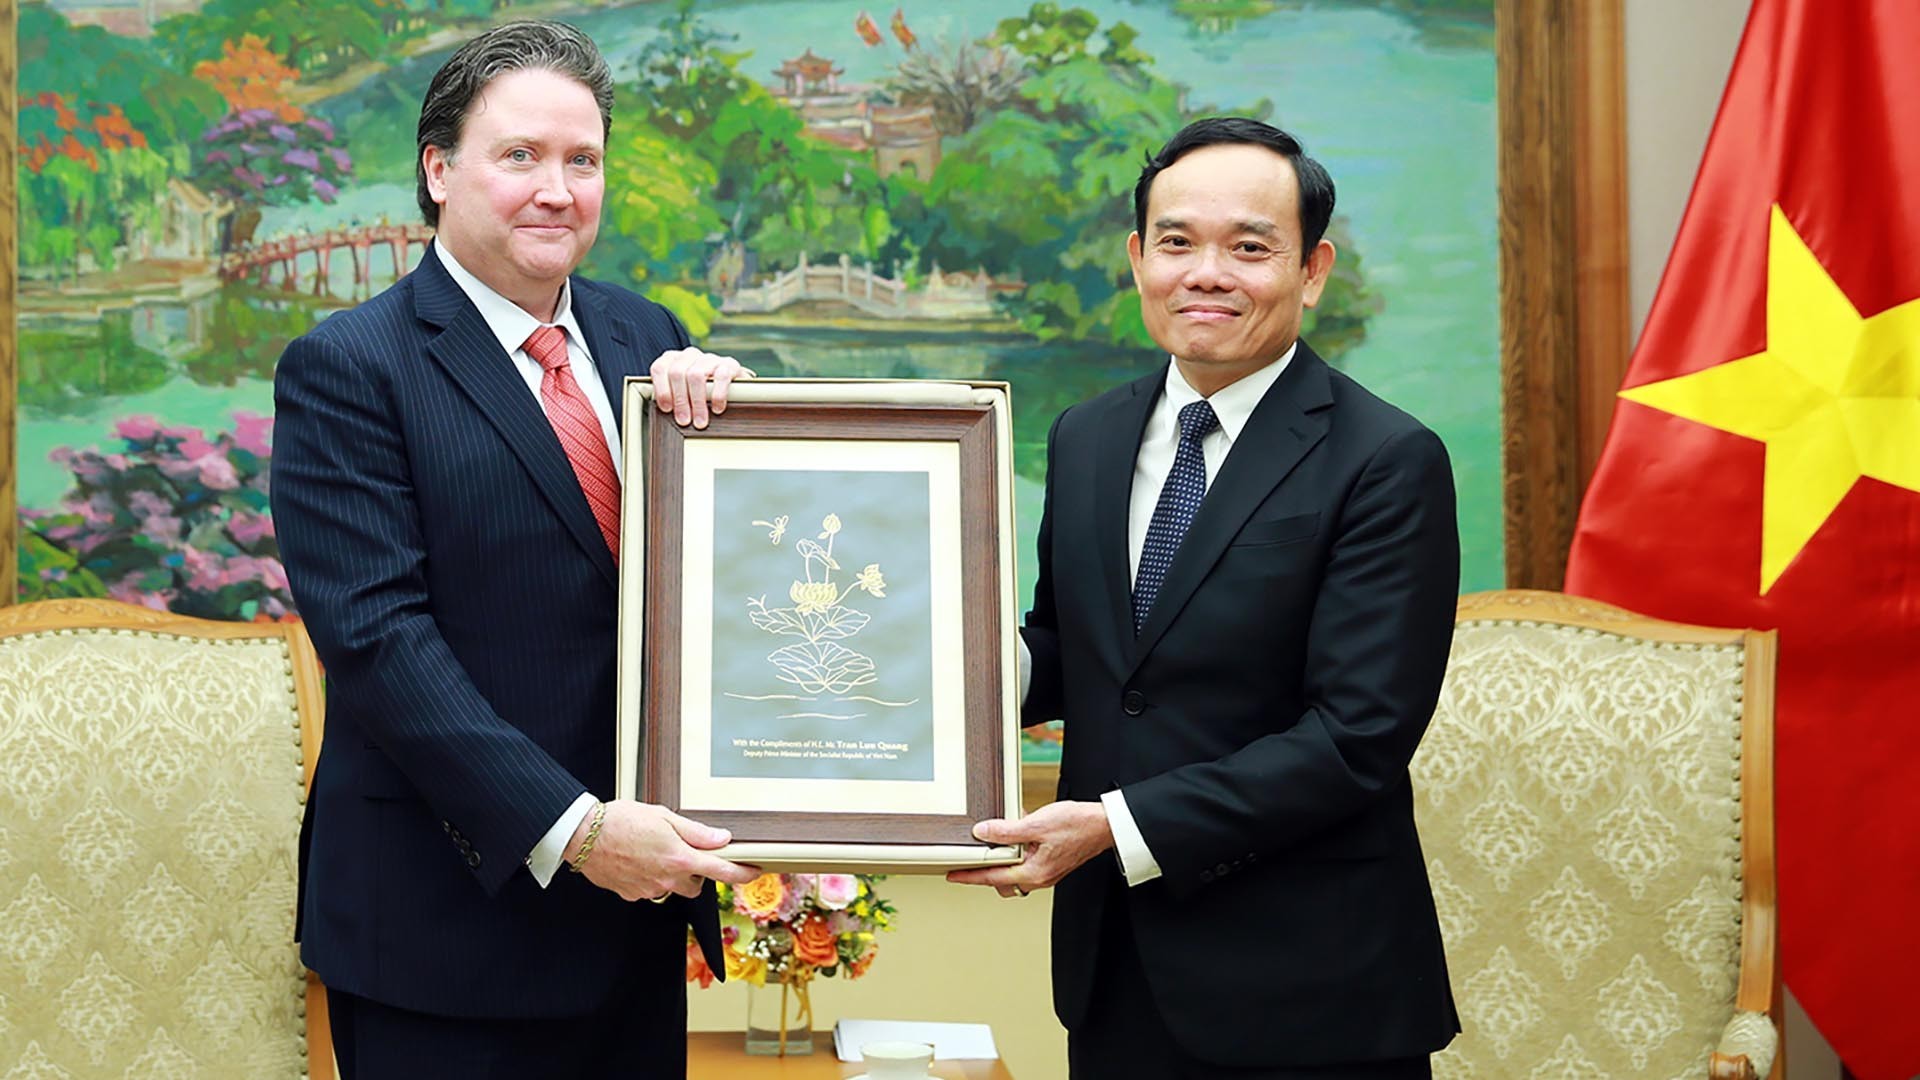 Hợp tác kinh tế, thương mại, đầu tư là trọng tâm và động lực của quan hệ Việt Nam-Hoa Kỳ